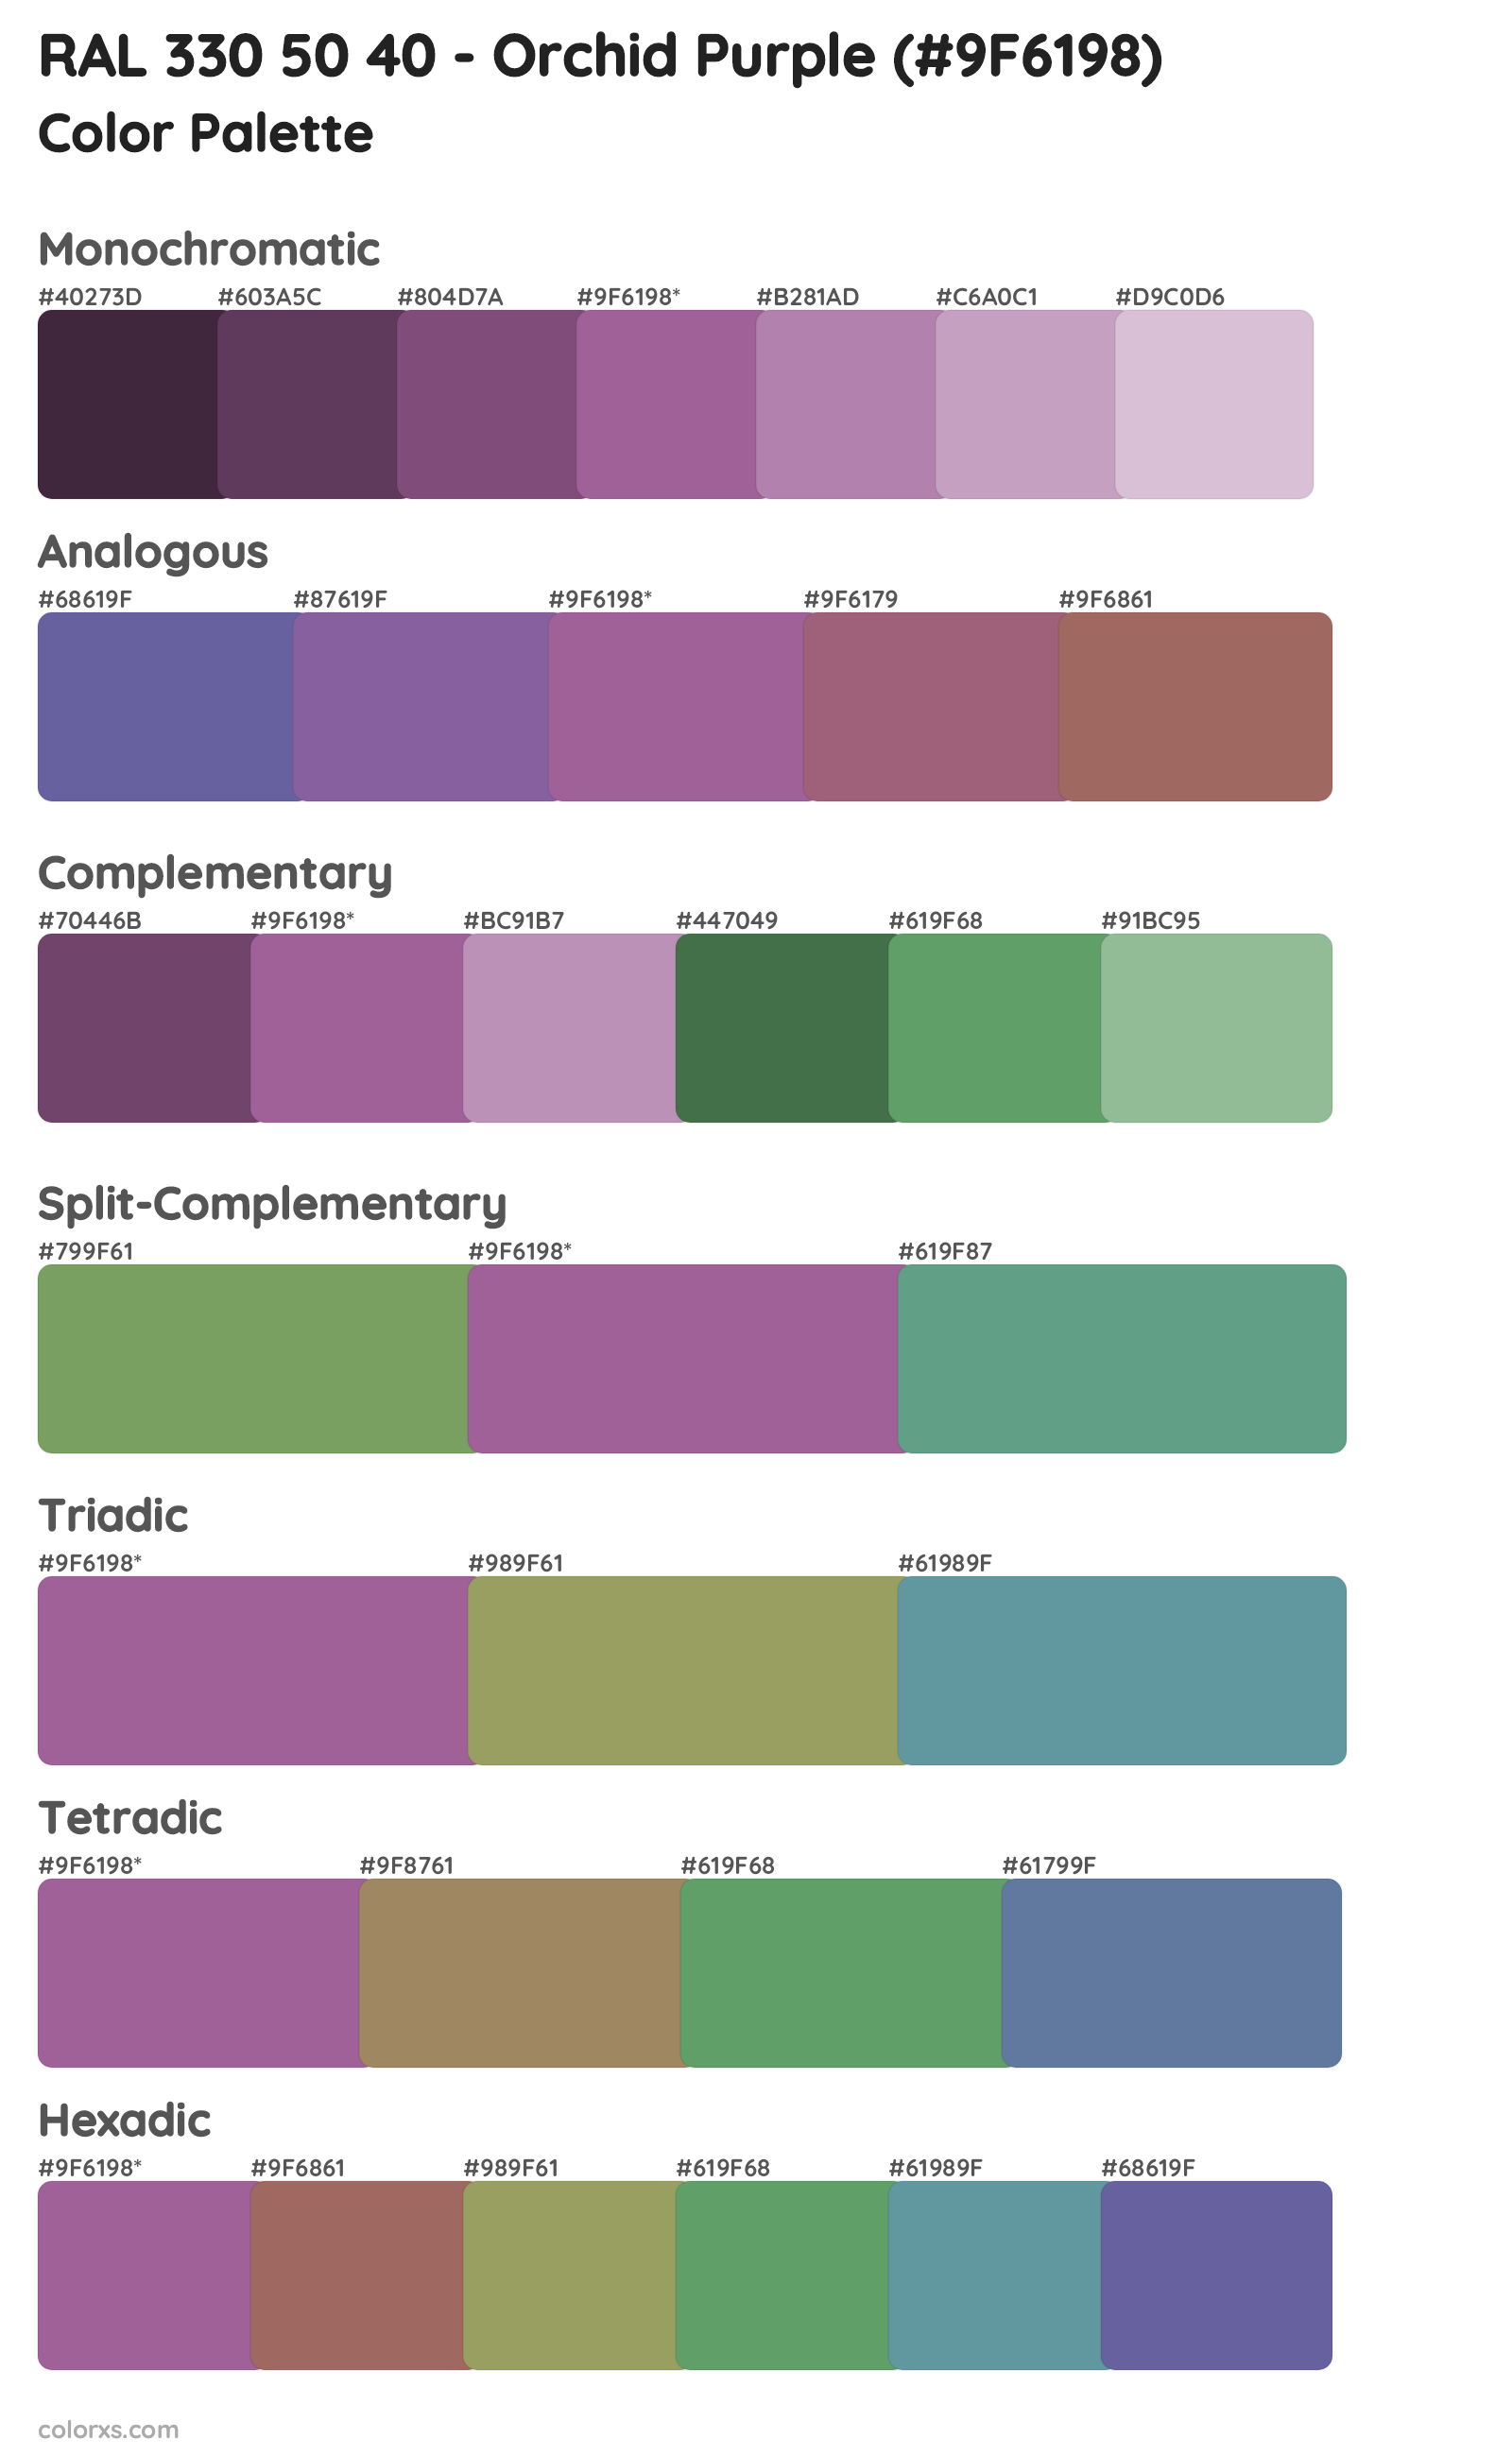 RAL 330 50 40 - Orchid Purple Color Scheme Palettes